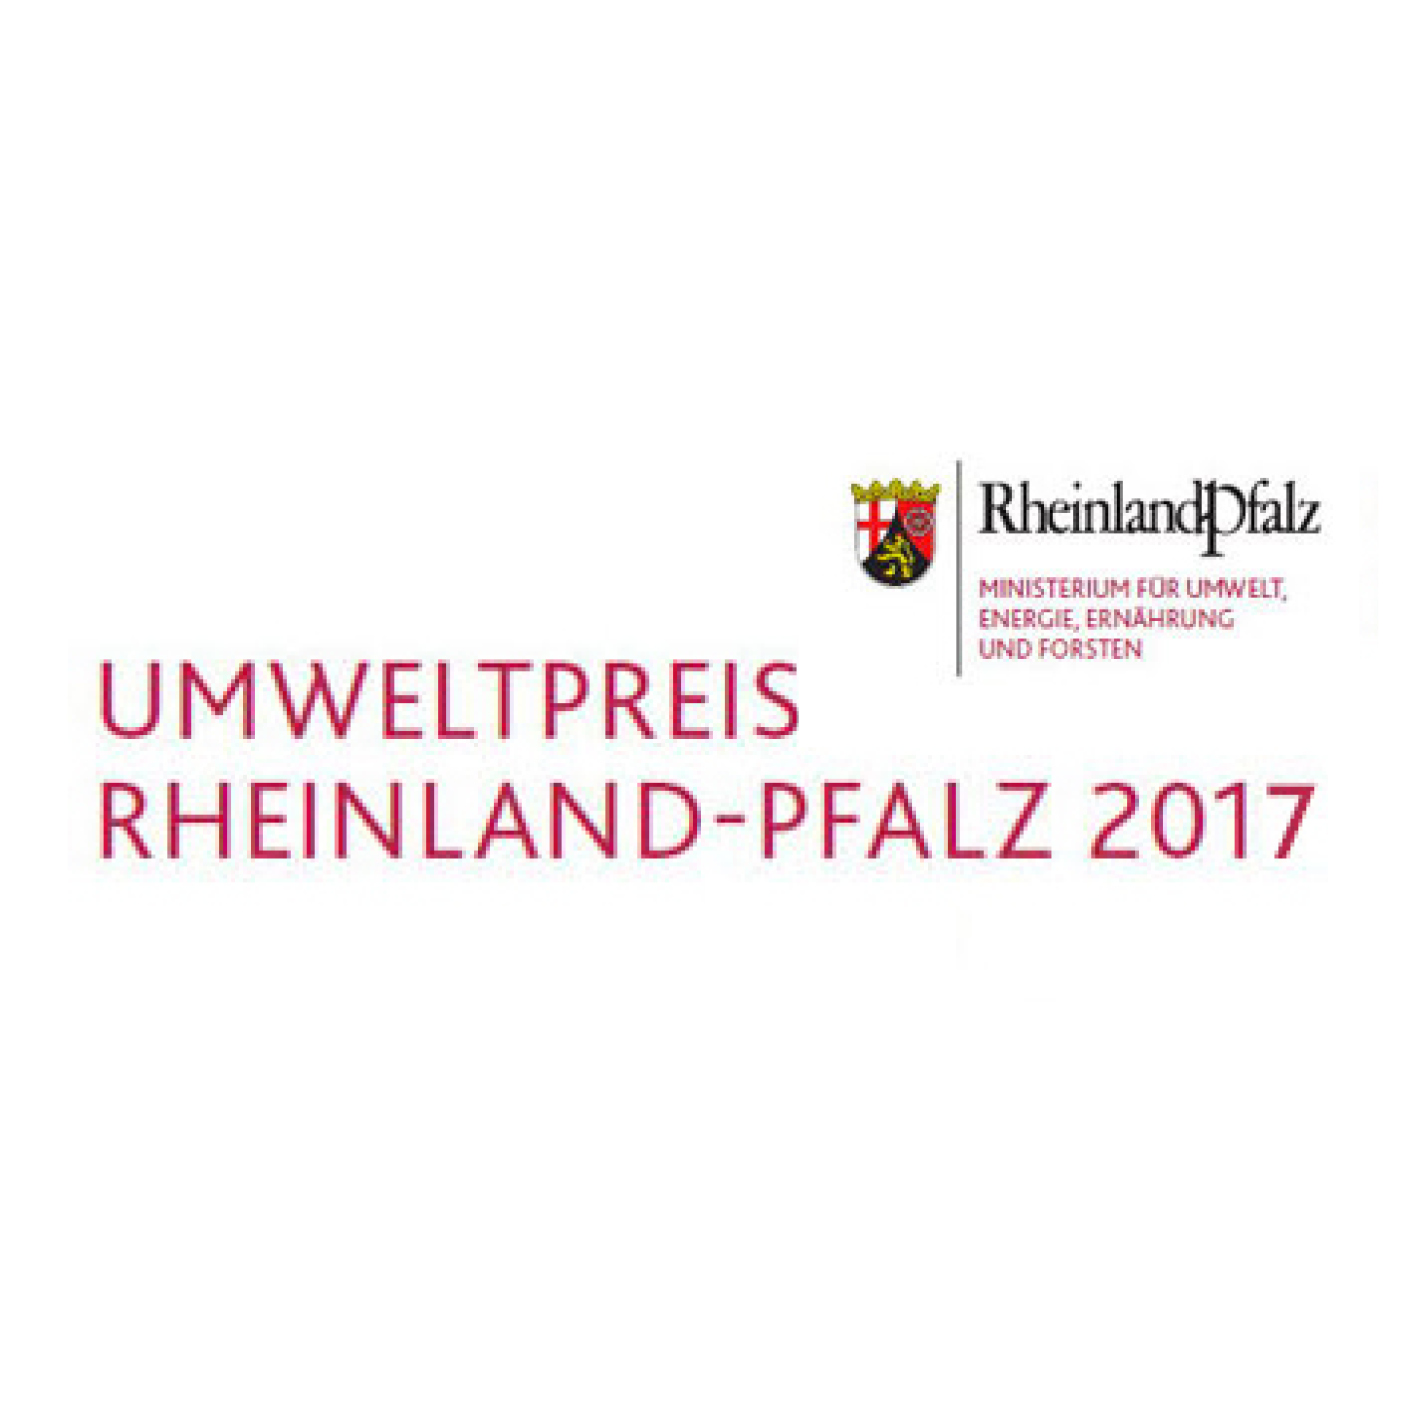 Umweltpreis Rheinland-Pfalz 2017